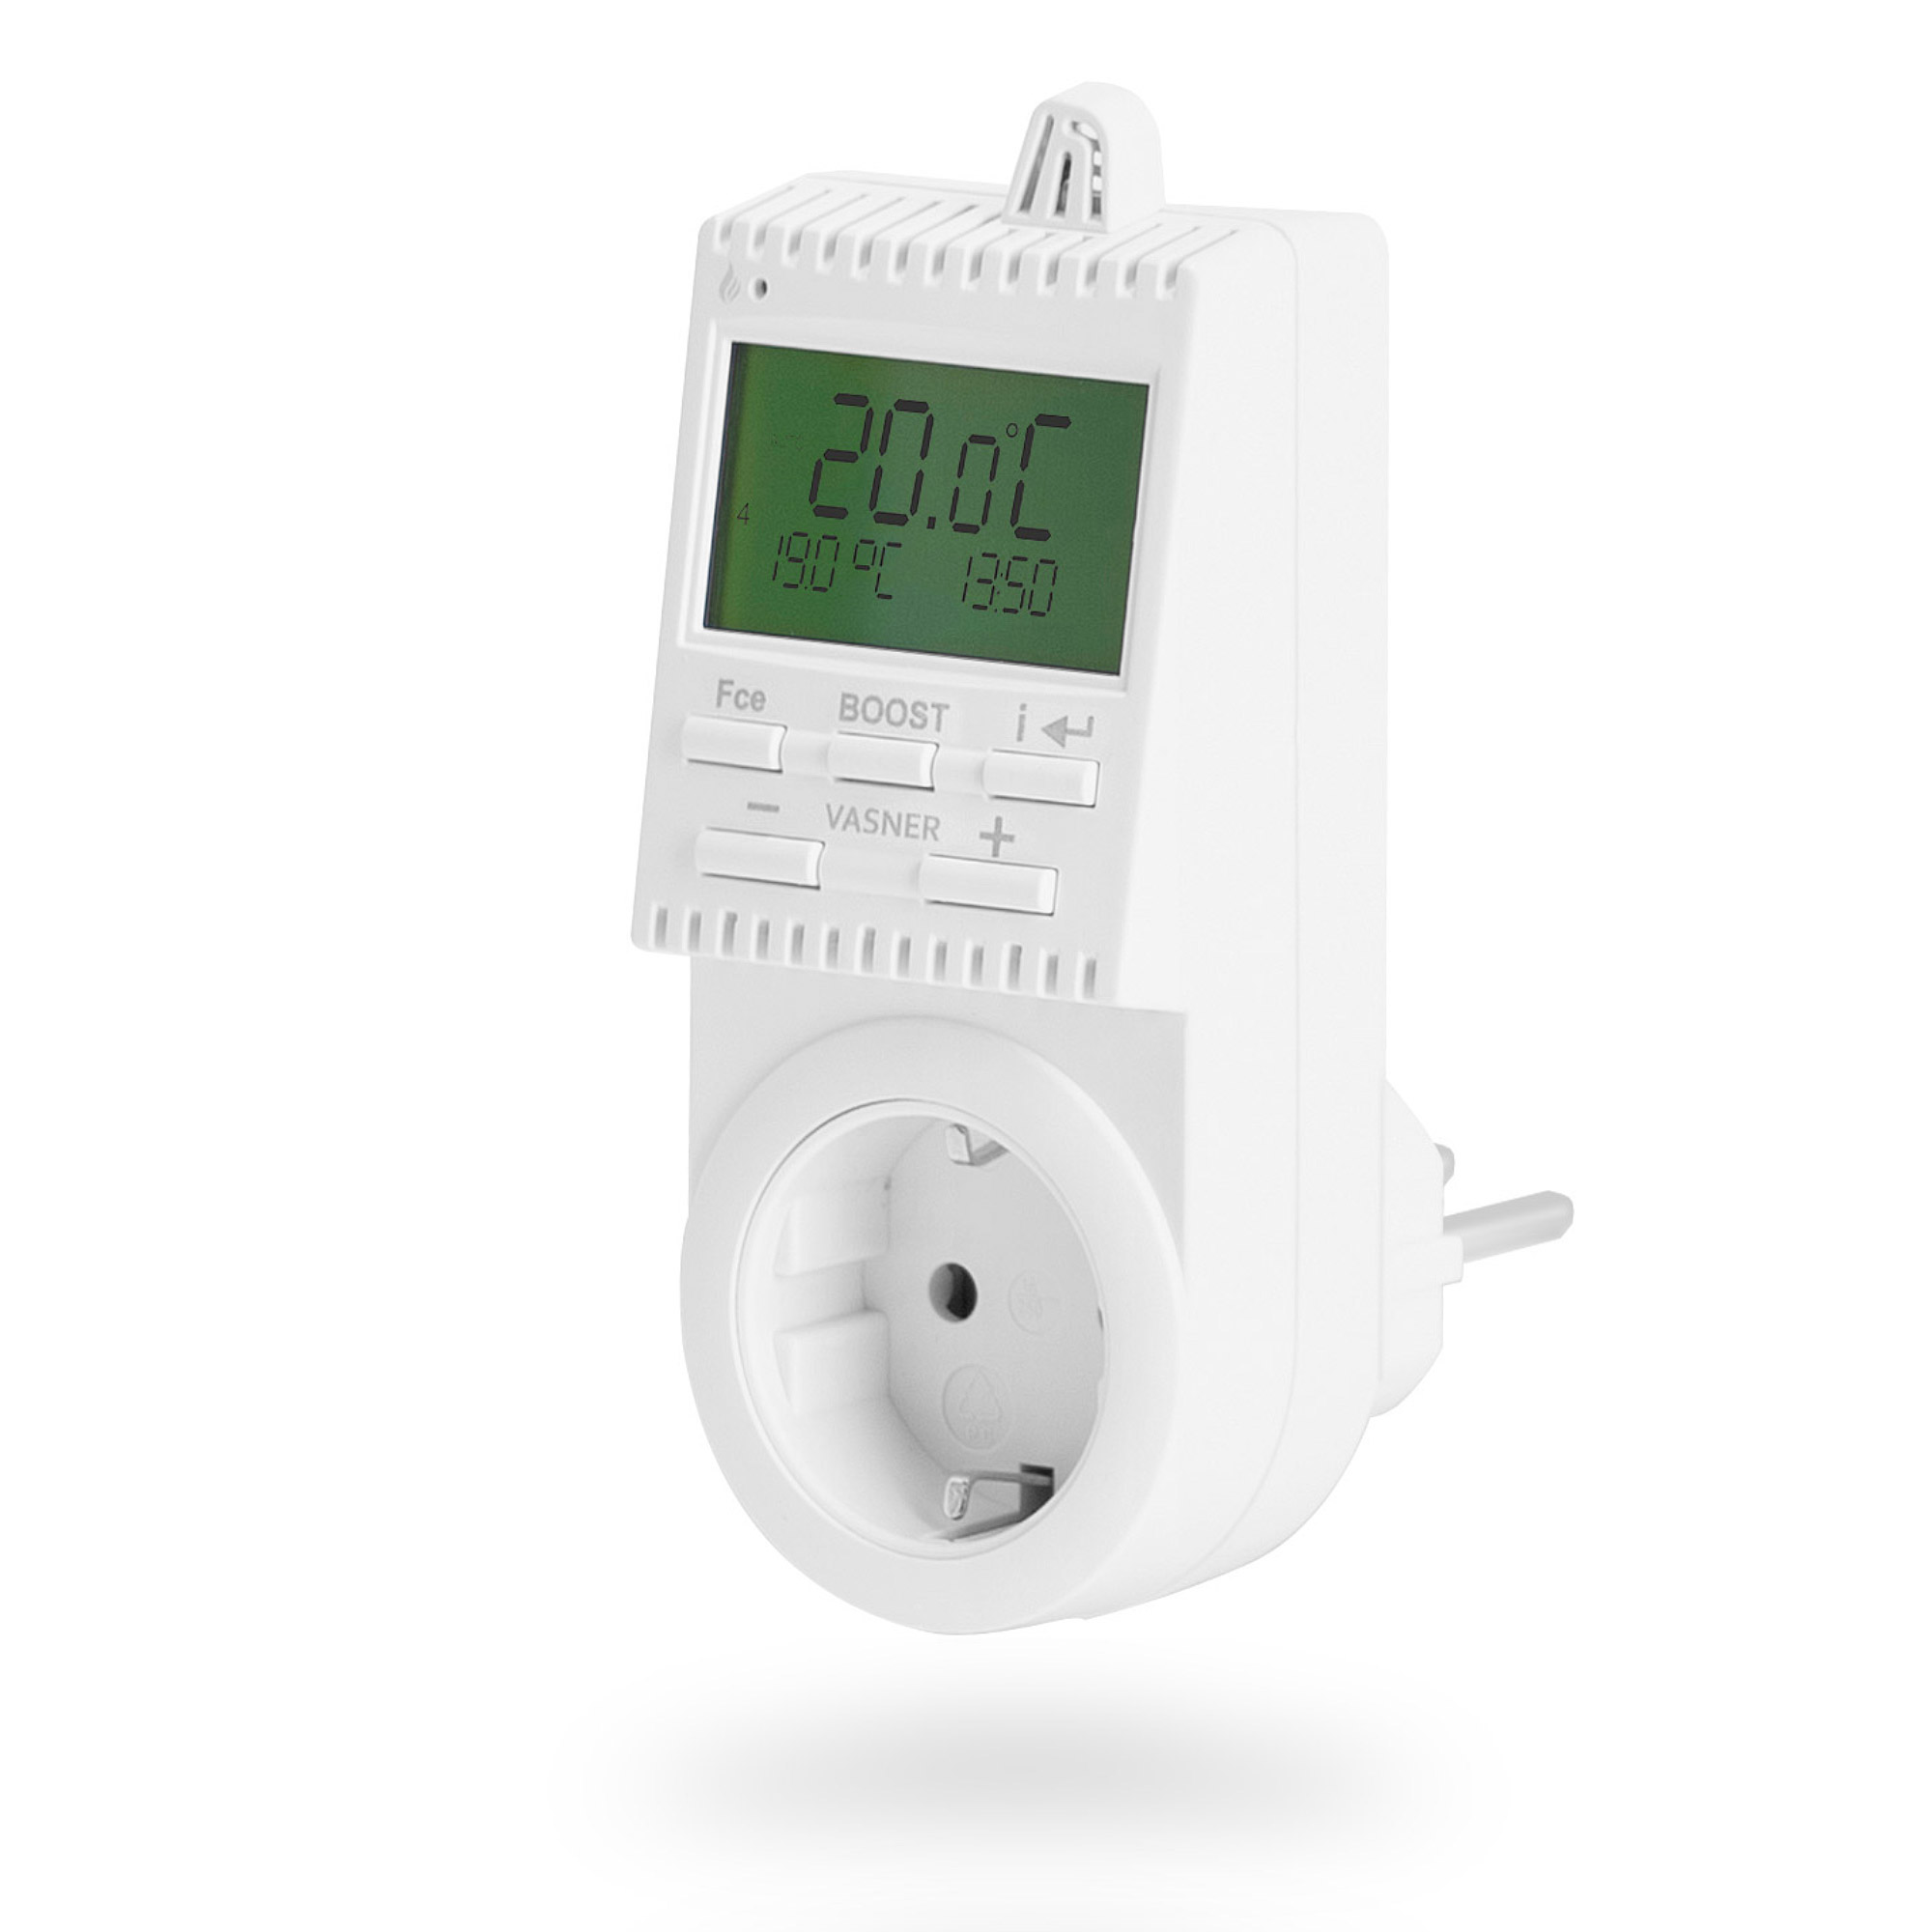 VUTX3 Universal Steckdosen-Thermostat, Weiß VASNER